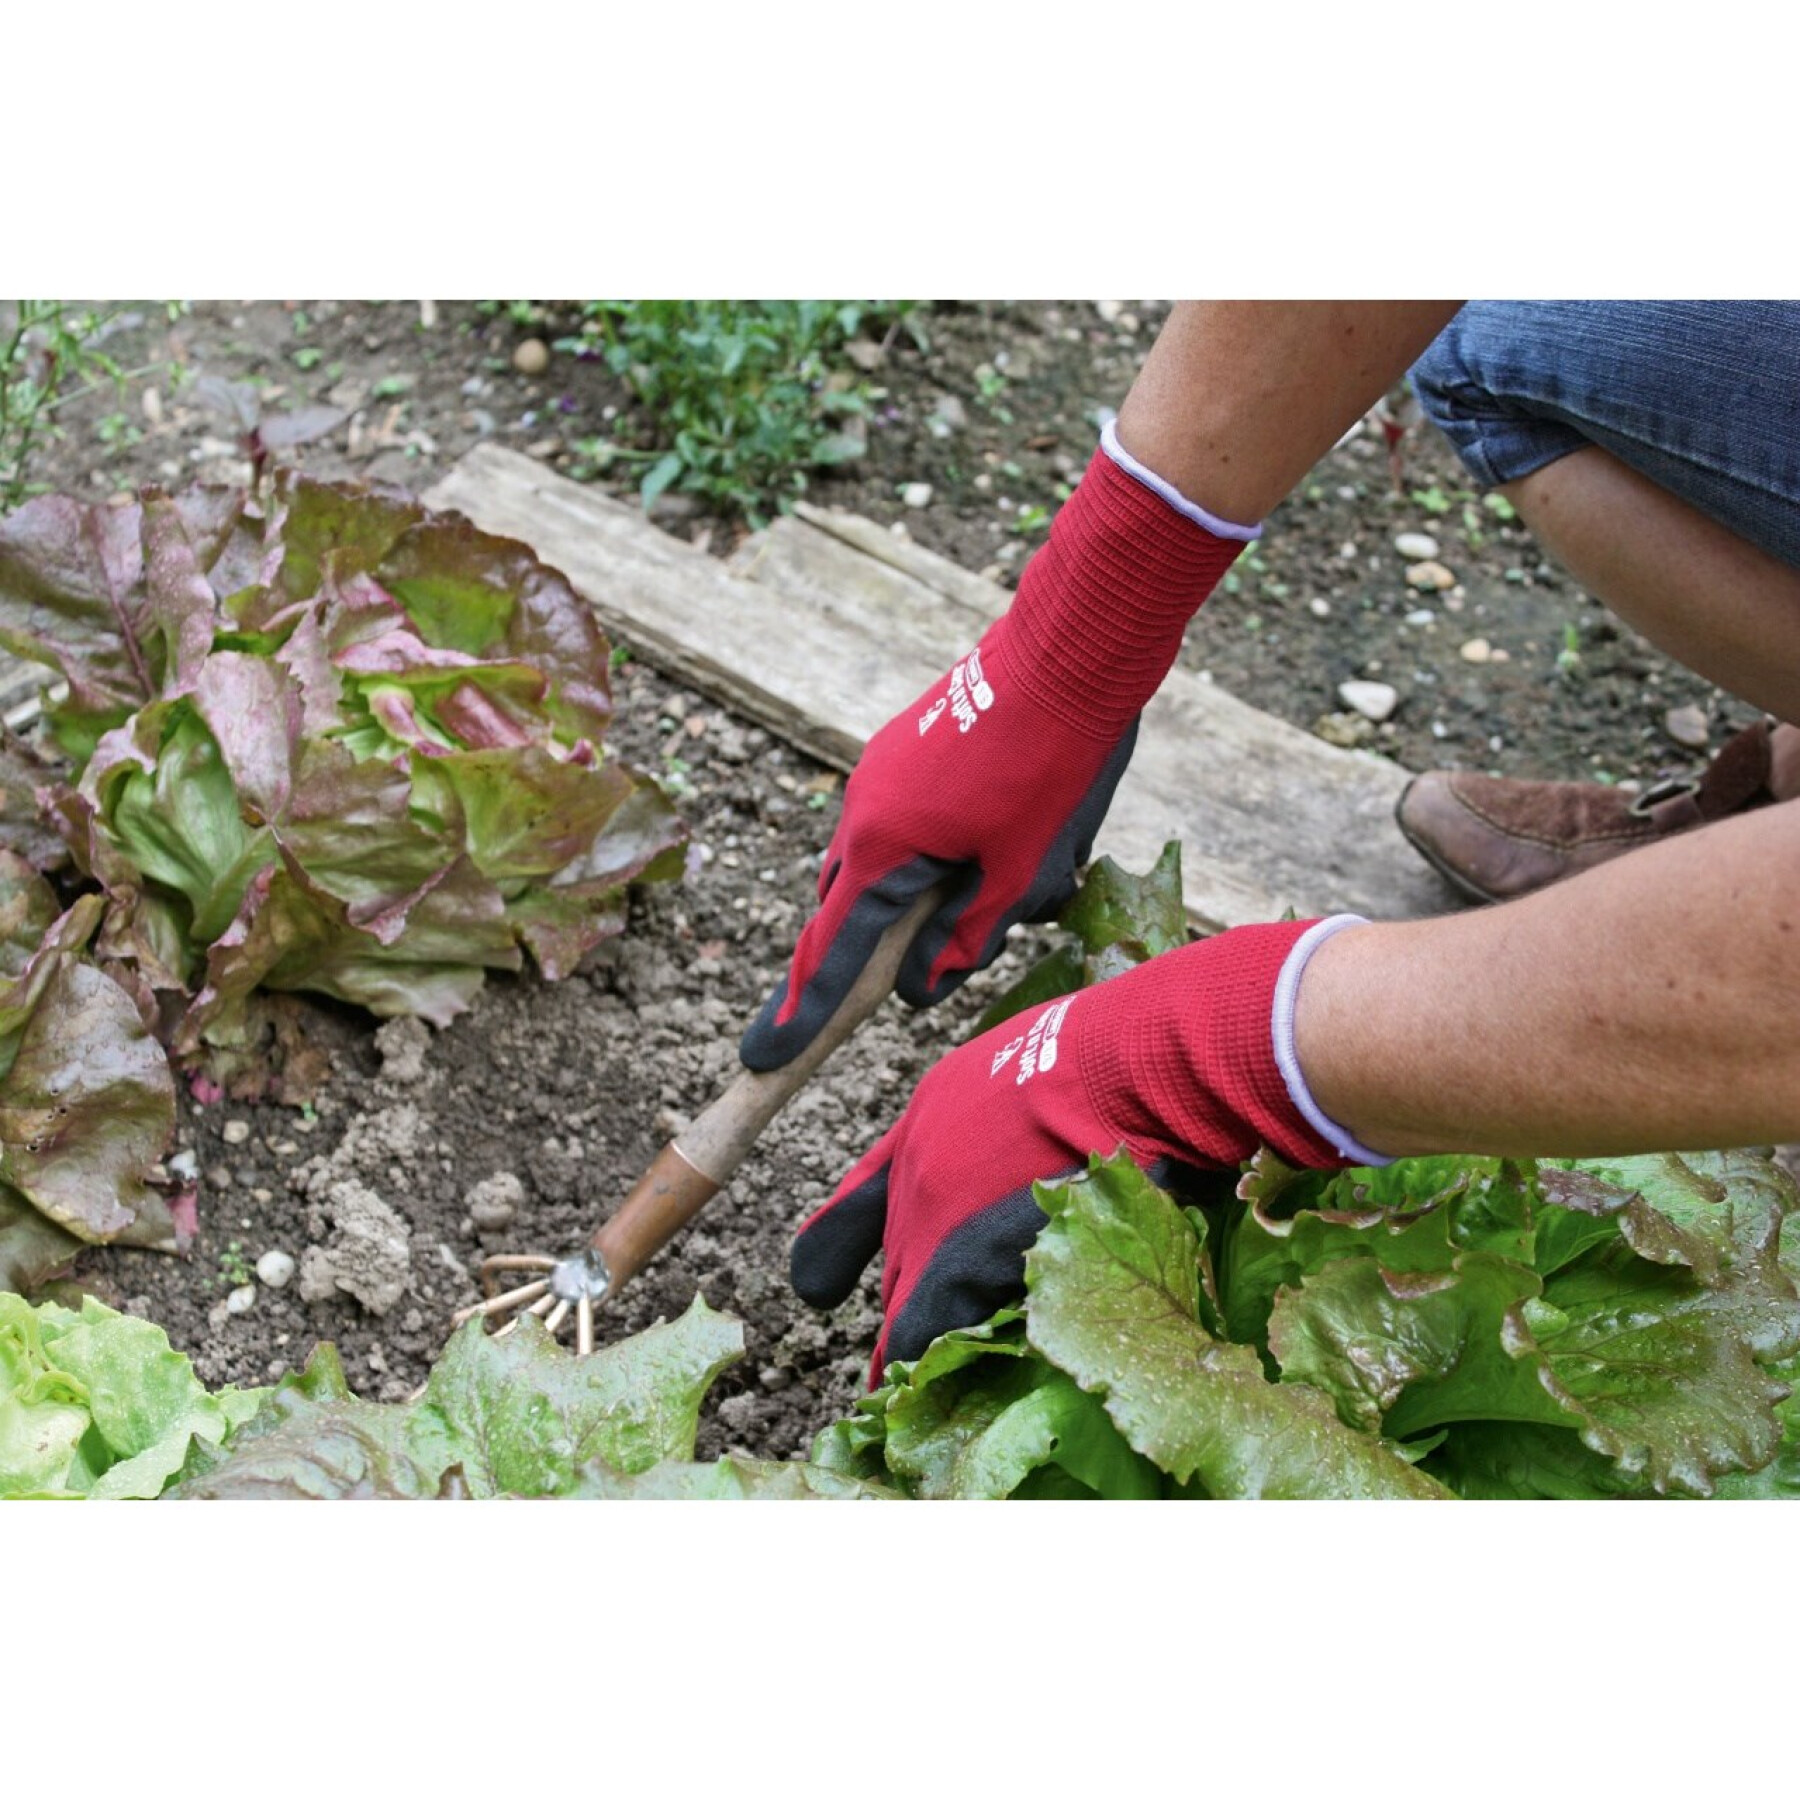 Gardening gloves Kerbl Soft N Care Landscape